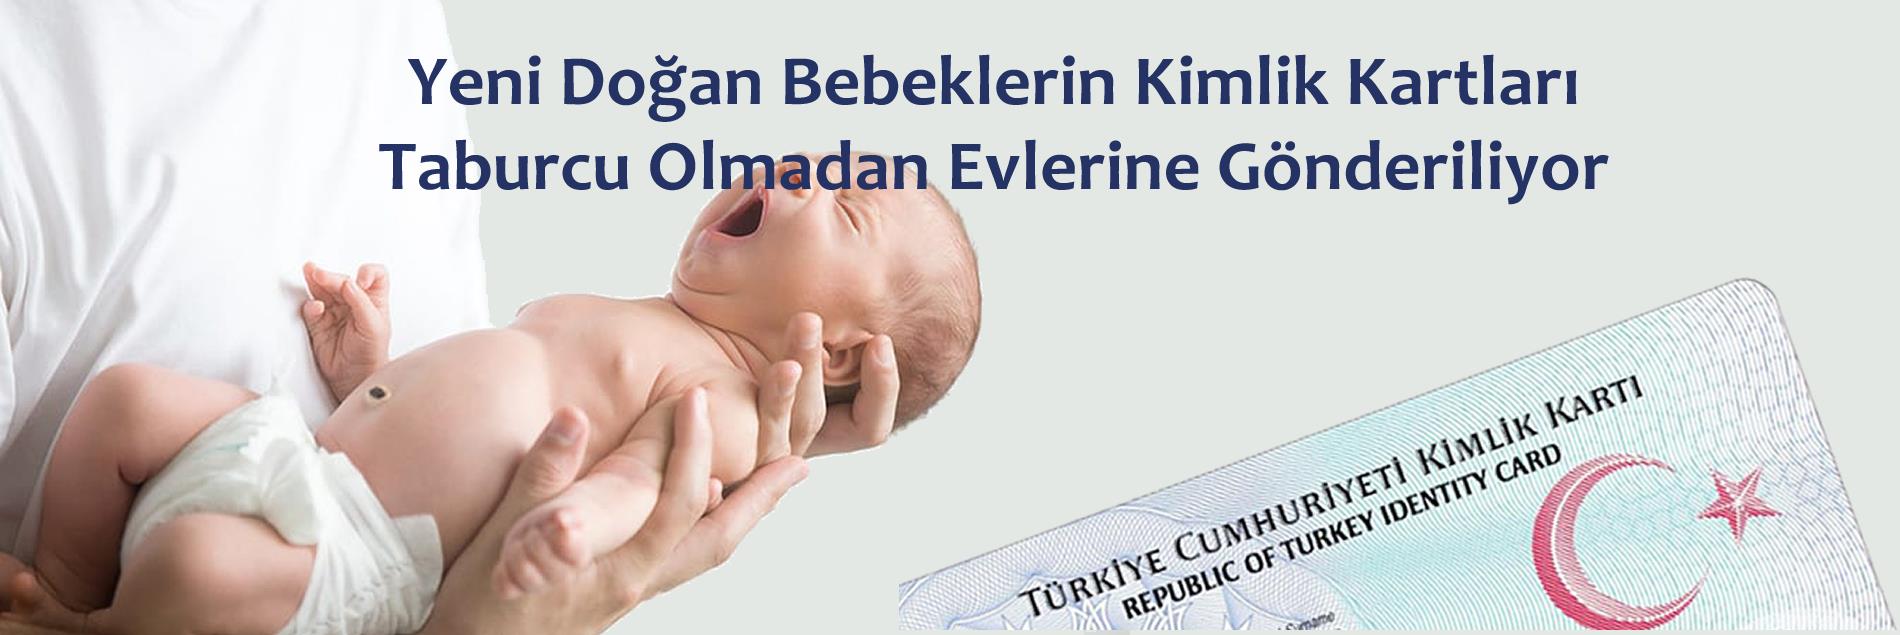 Yenidoğan bebeklerin kimlik kartları hastaneden taburcu olmadan evlerine gönderiliyor.